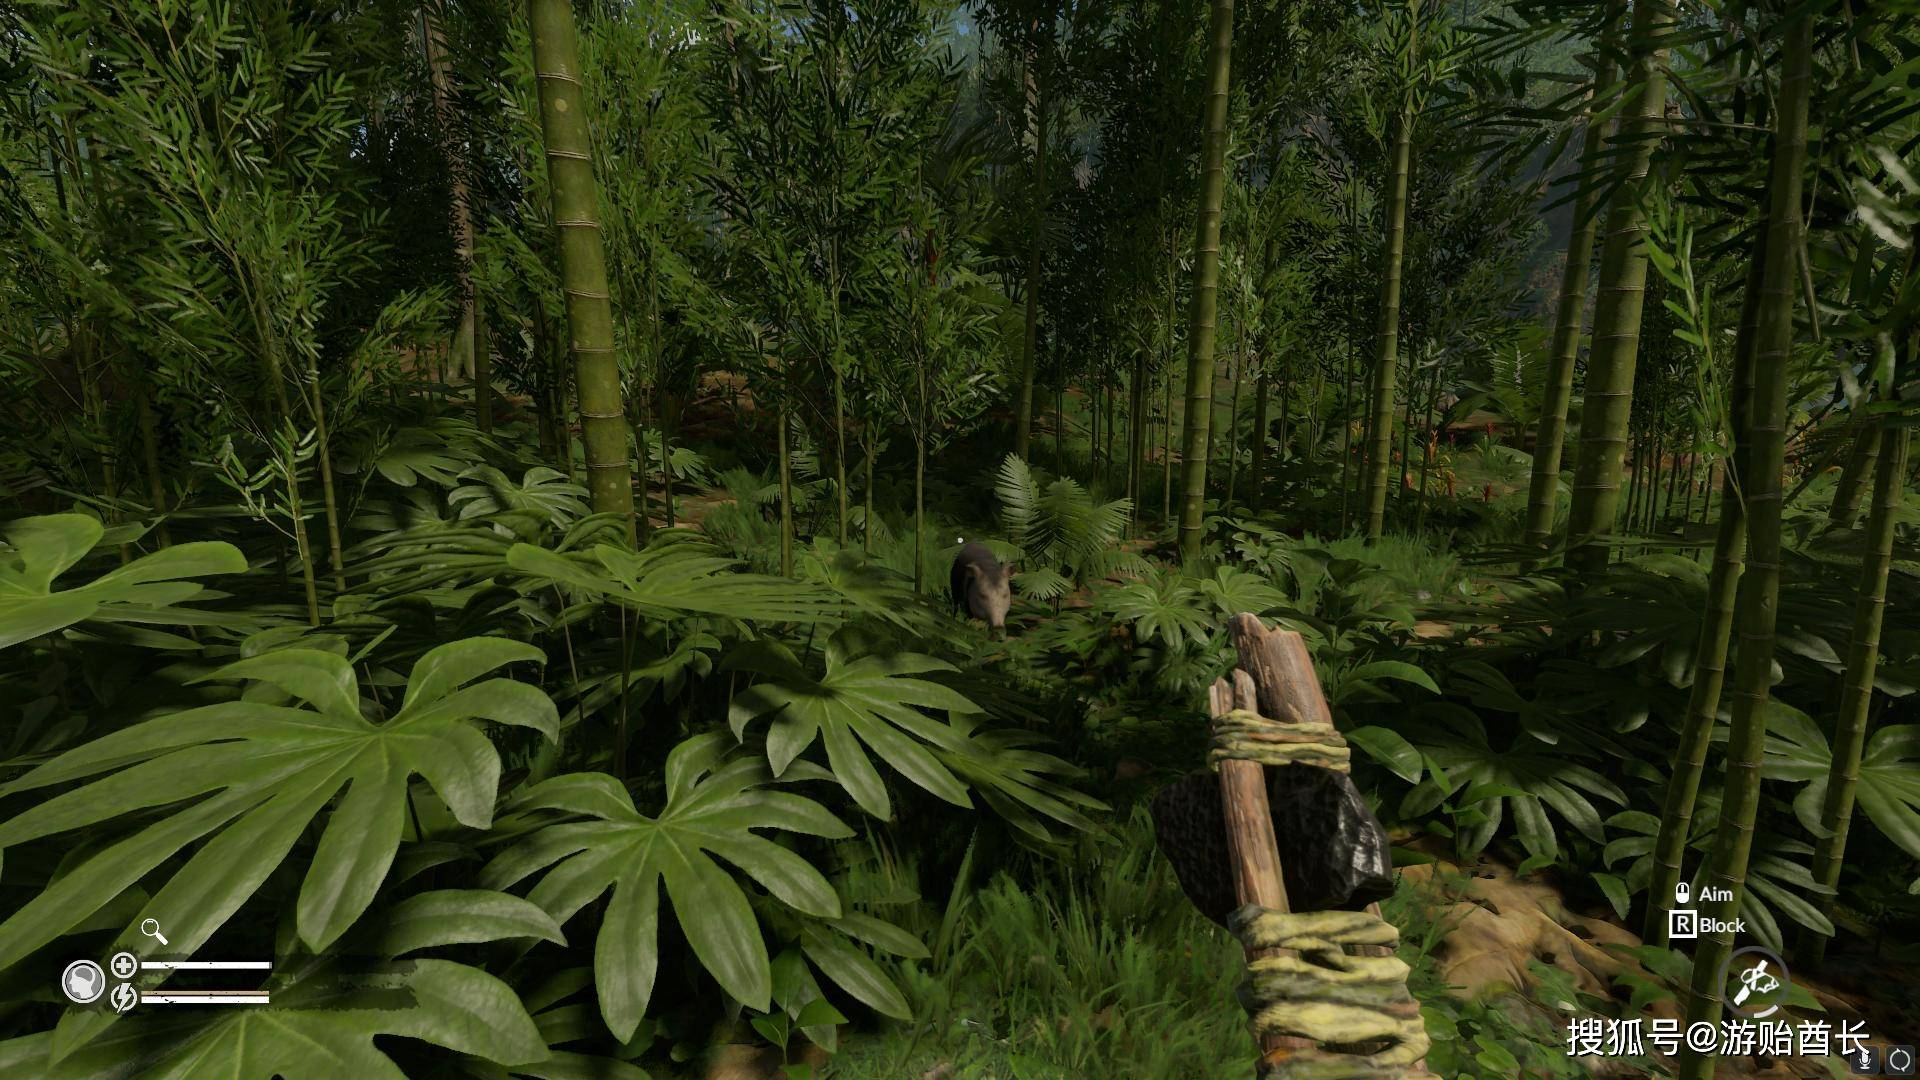 生存游戏《绿色地狱》的开发者宣布游戏的新章节《亚马逊之魂》的第